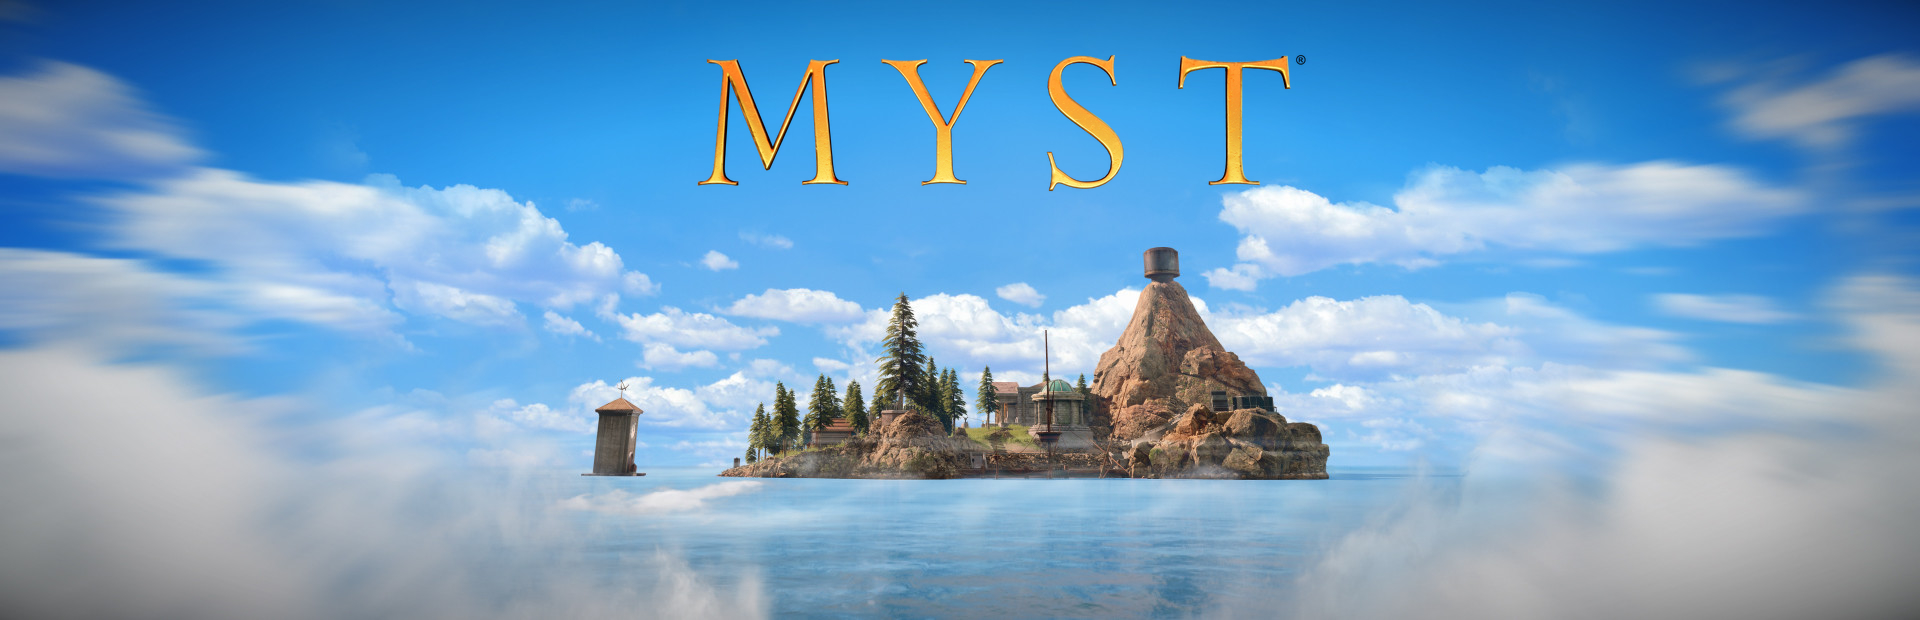 دانلود بازی Myst 2021 برای PC | گیمباتو